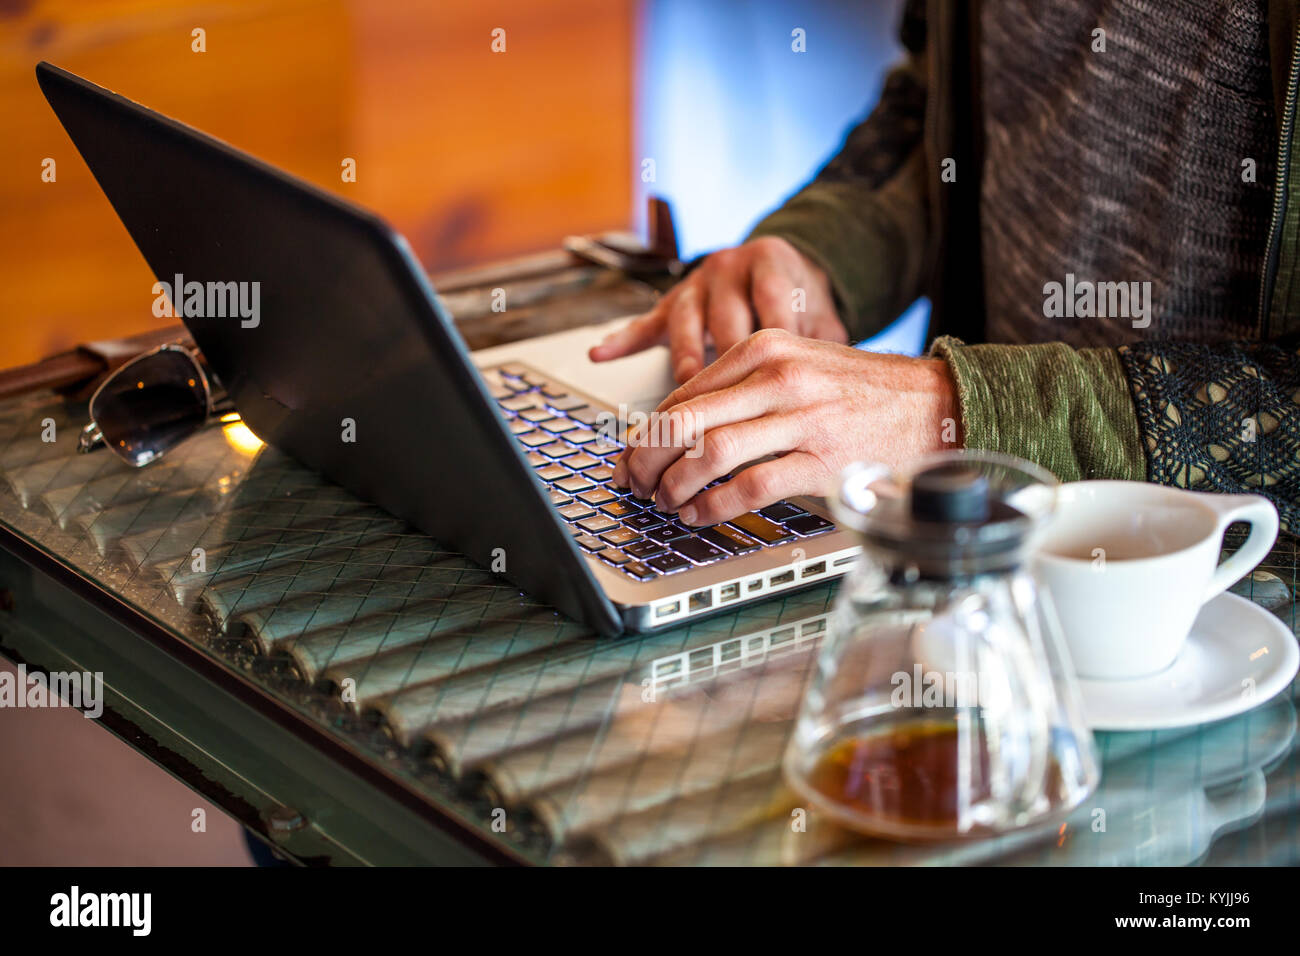 Die Hände des kaukasischen Mann Typ auf Laptop mit Kaffeebecher und Kaffeetasse neben ihm in einem Café mit Fokus auf der Tastatur Stockfoto